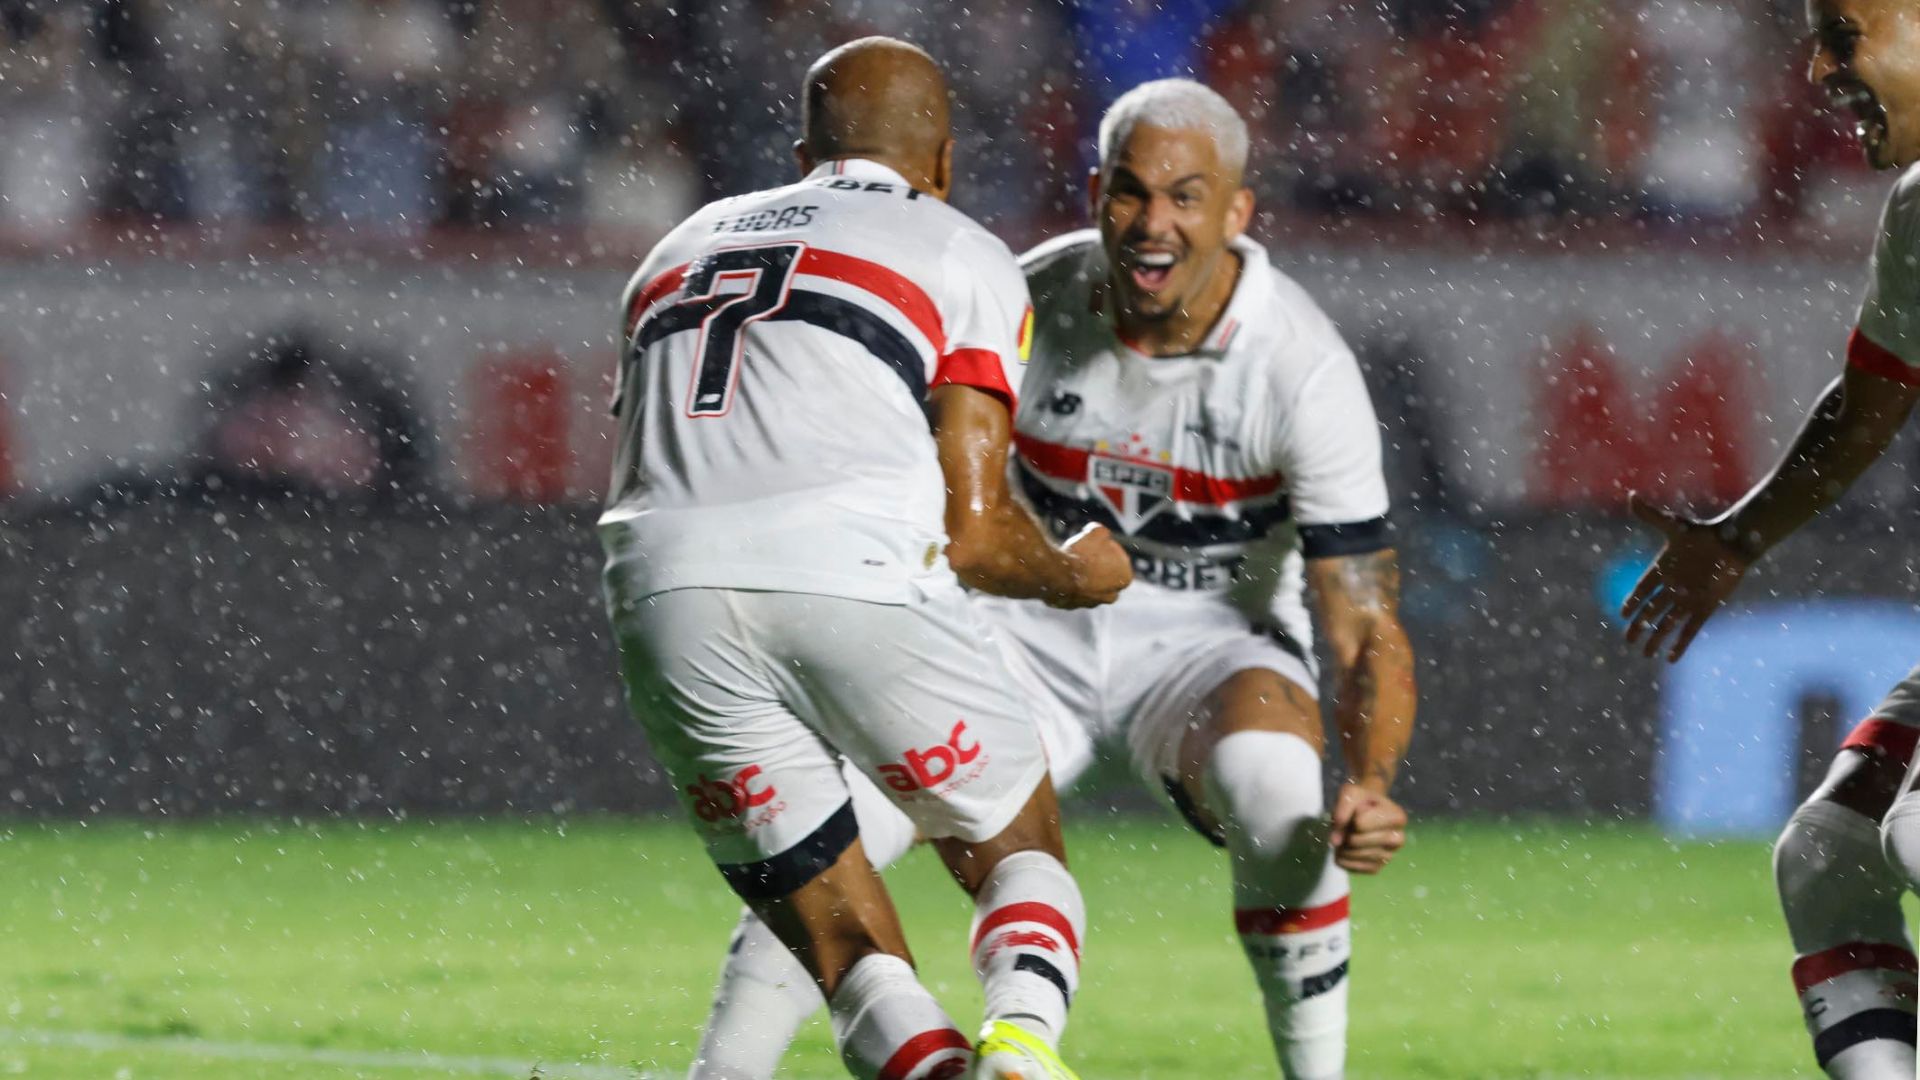 Lucas comemorando primeiro gol da temporada (Crédito: Rubens Chiri e Paulo Pinto / São Paulo FC)